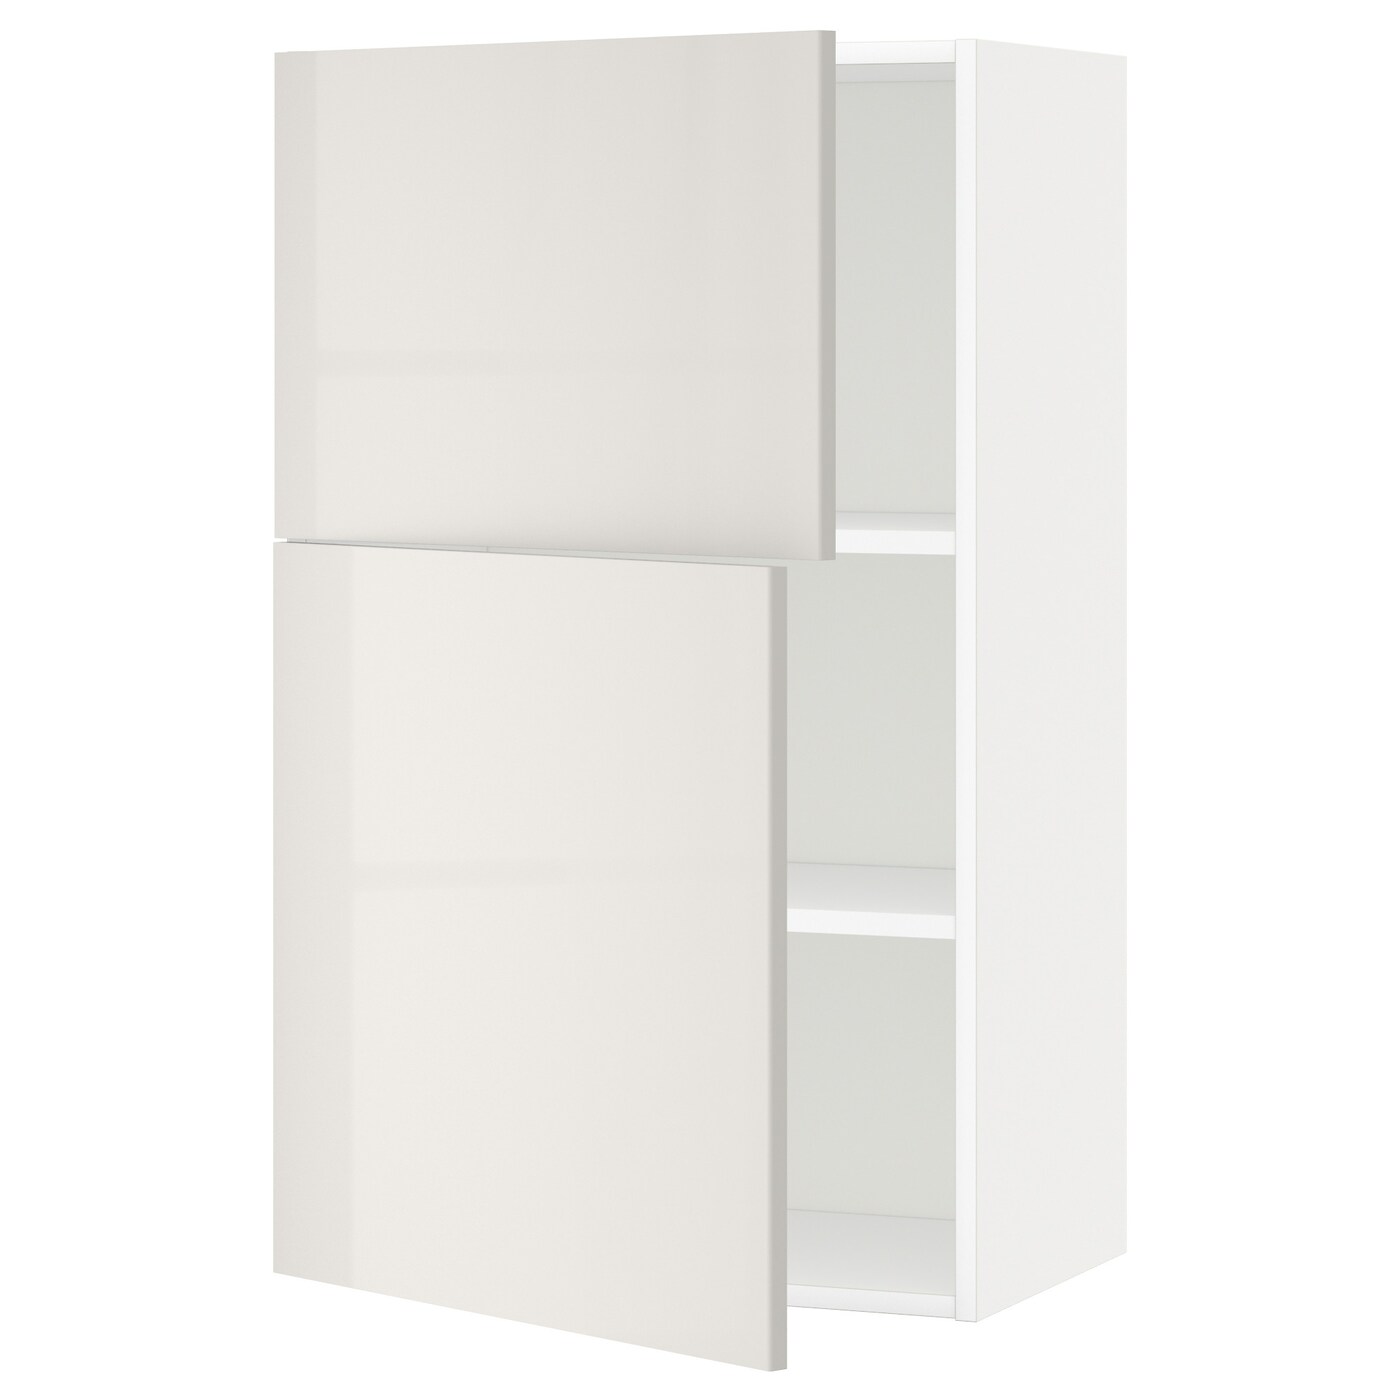 Навесной шкаф с полкой - METOD IKEA/ МЕТОД ИКЕА, 100х60 см, белый